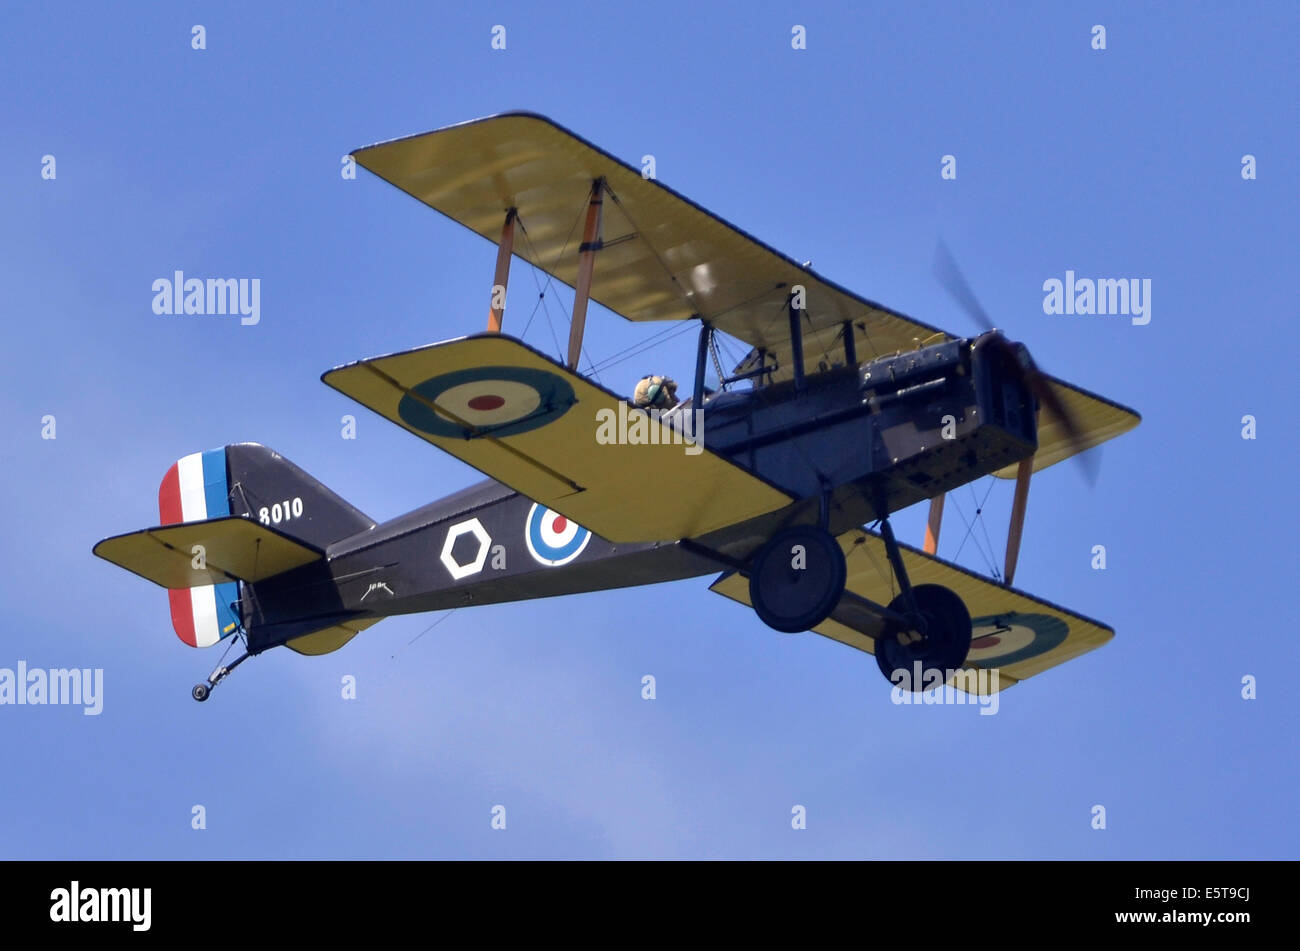 Royal Aircraft Factory SE.5a avion dans WW1 Royal Flying Corps affichant des marques à Farnborough Airshow 2014 Banque D'Images